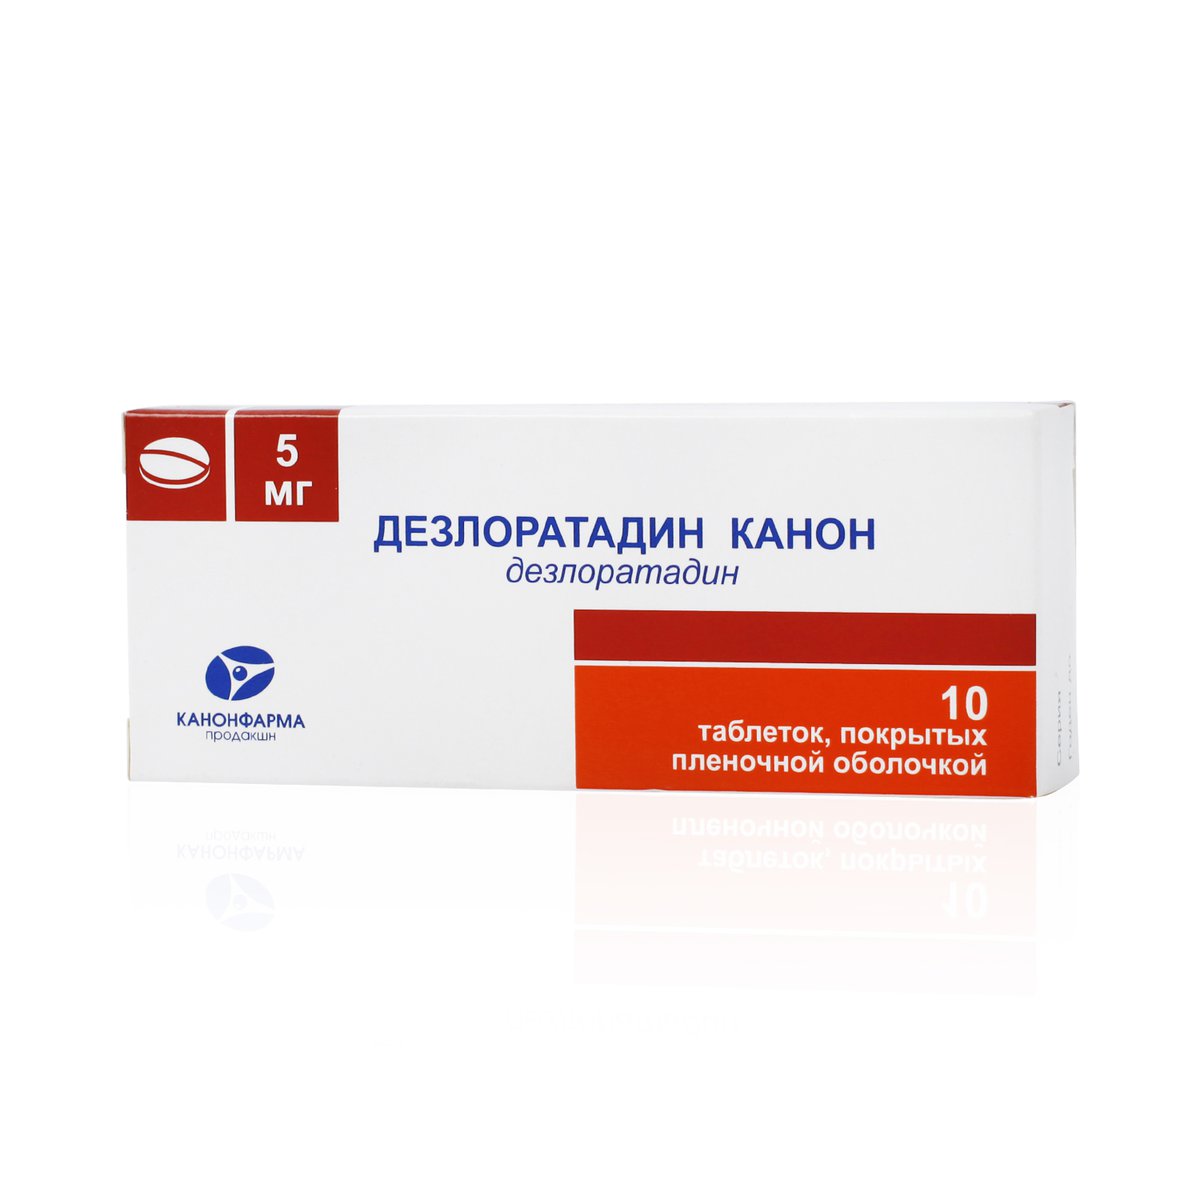 Дезлоратадин канон (таблетки, 10 шт, 5 мг, для приема внутрь) - цена .